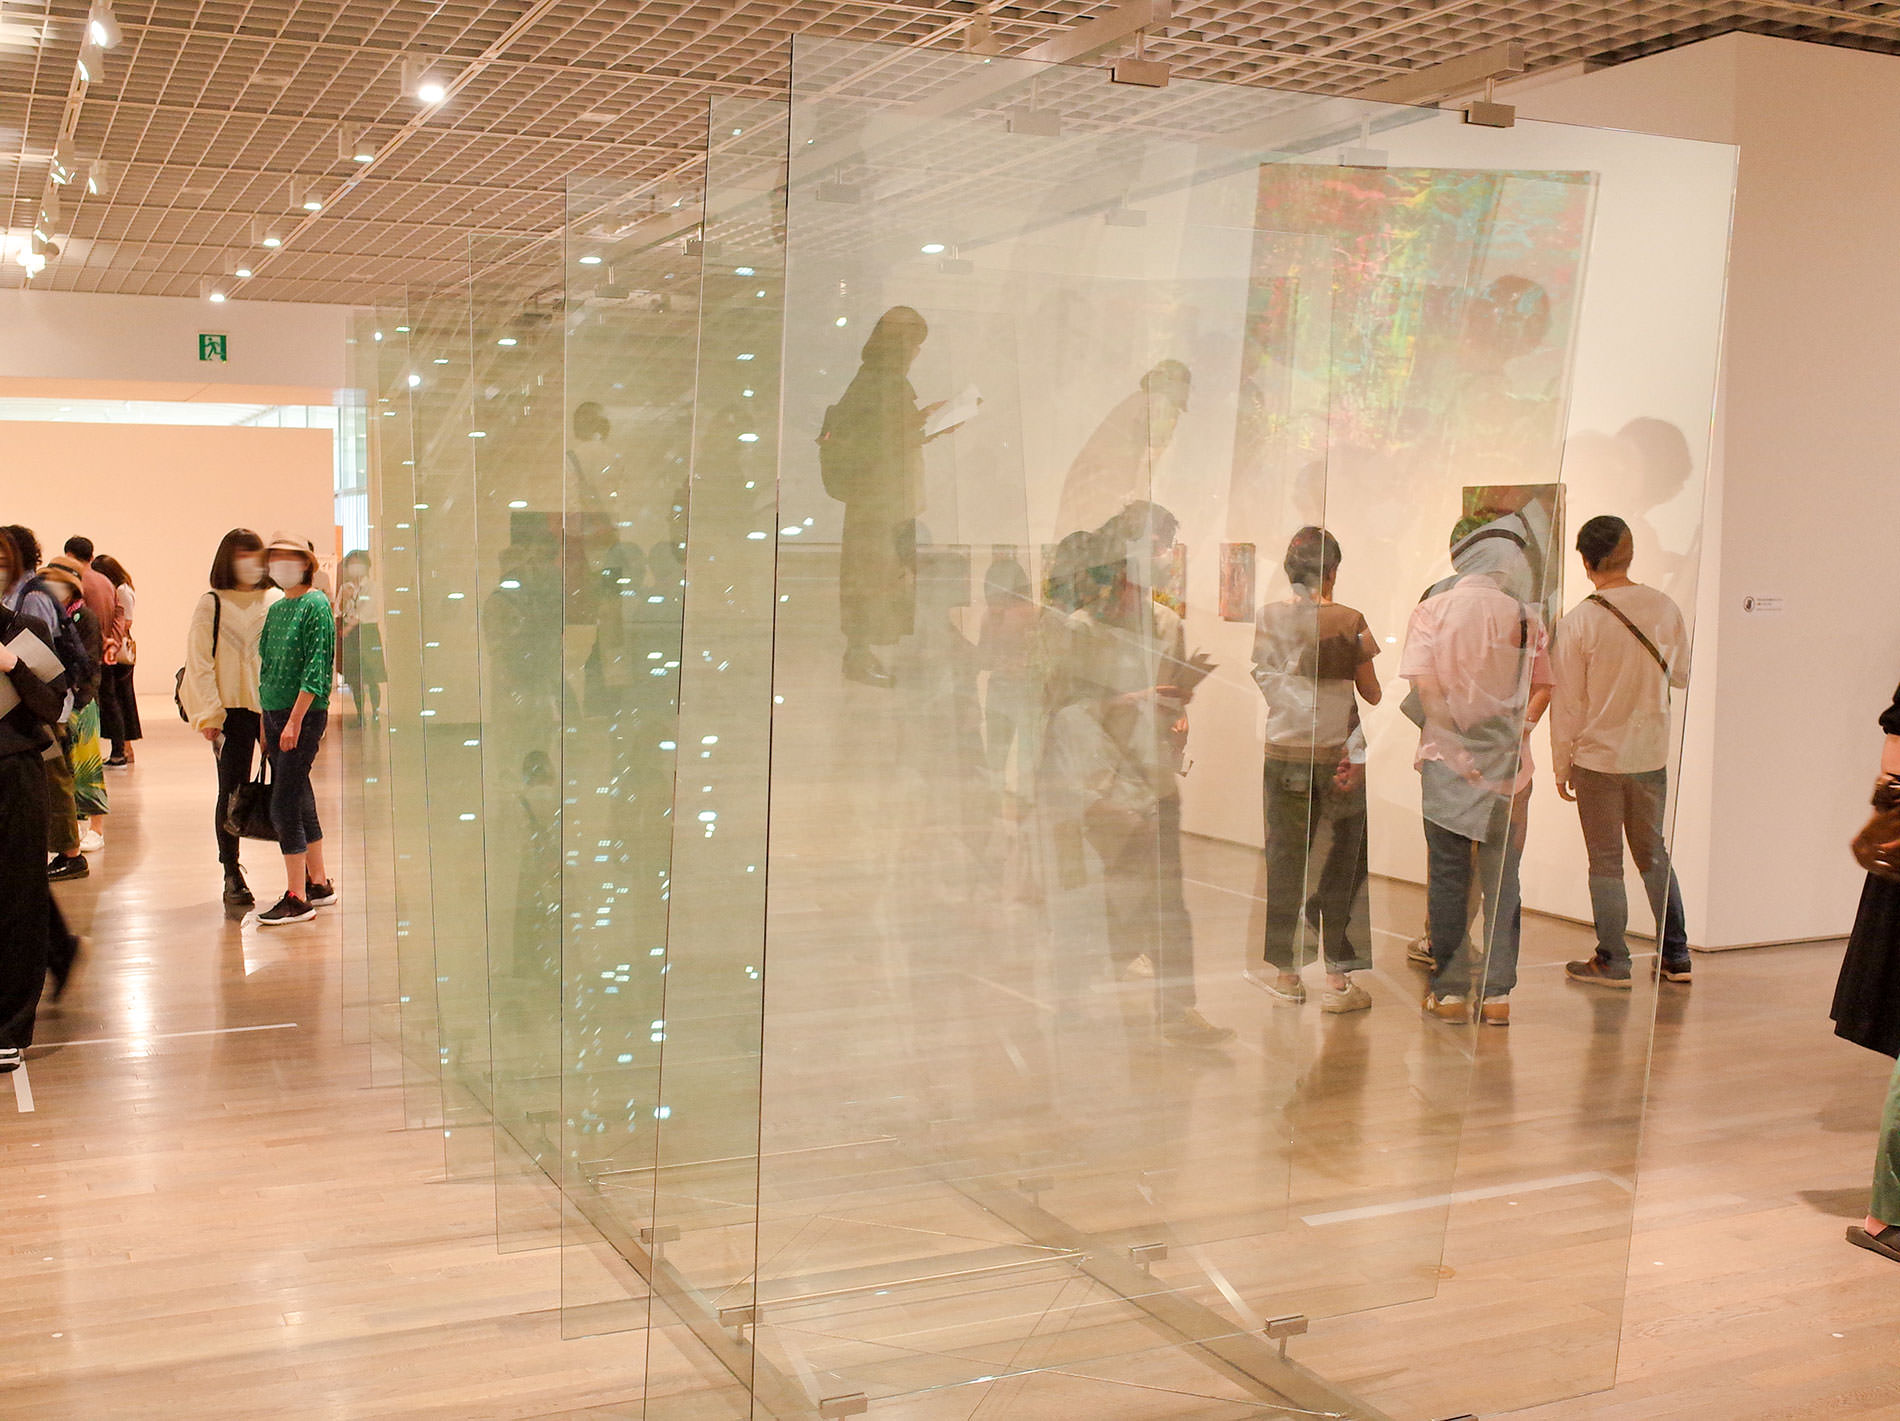 ゲルハルト・リヒター展 / 2022 | Gerhard Richter Exhibition / 2022 in Tokyo